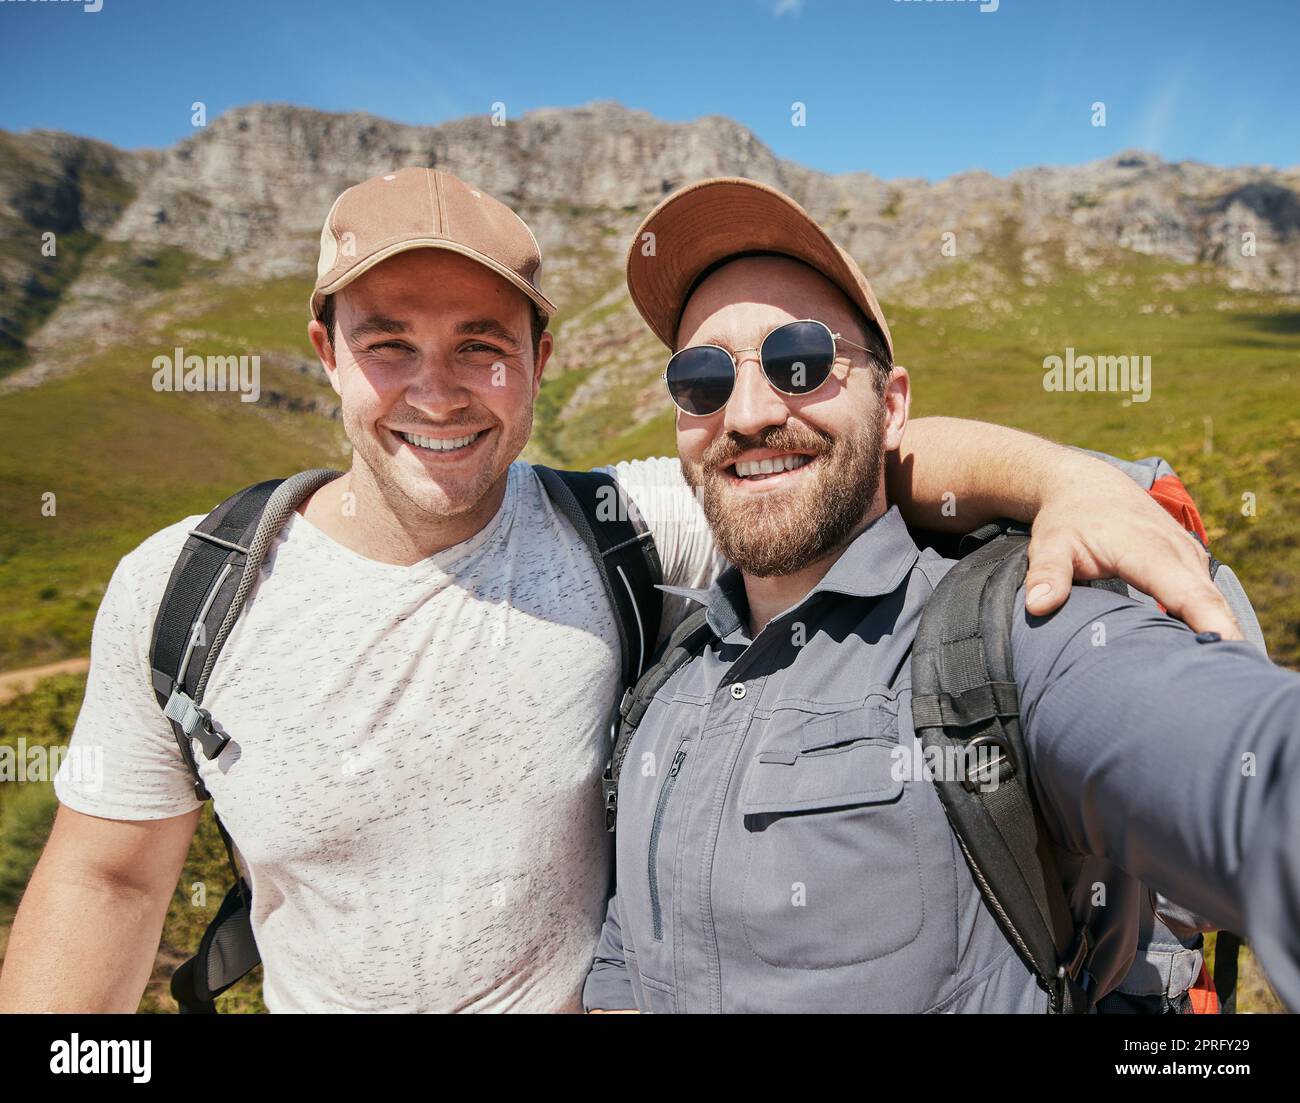 Selfie d'hommes ou d'amis de randonnée heureux dans la montagne ou la nature sur les vacances Voyage en été ou au printemps ensemble. Portrait de jeunes touristes souriant ou souriant lors d'un voyage d'aventure de trekking Banque D'Images